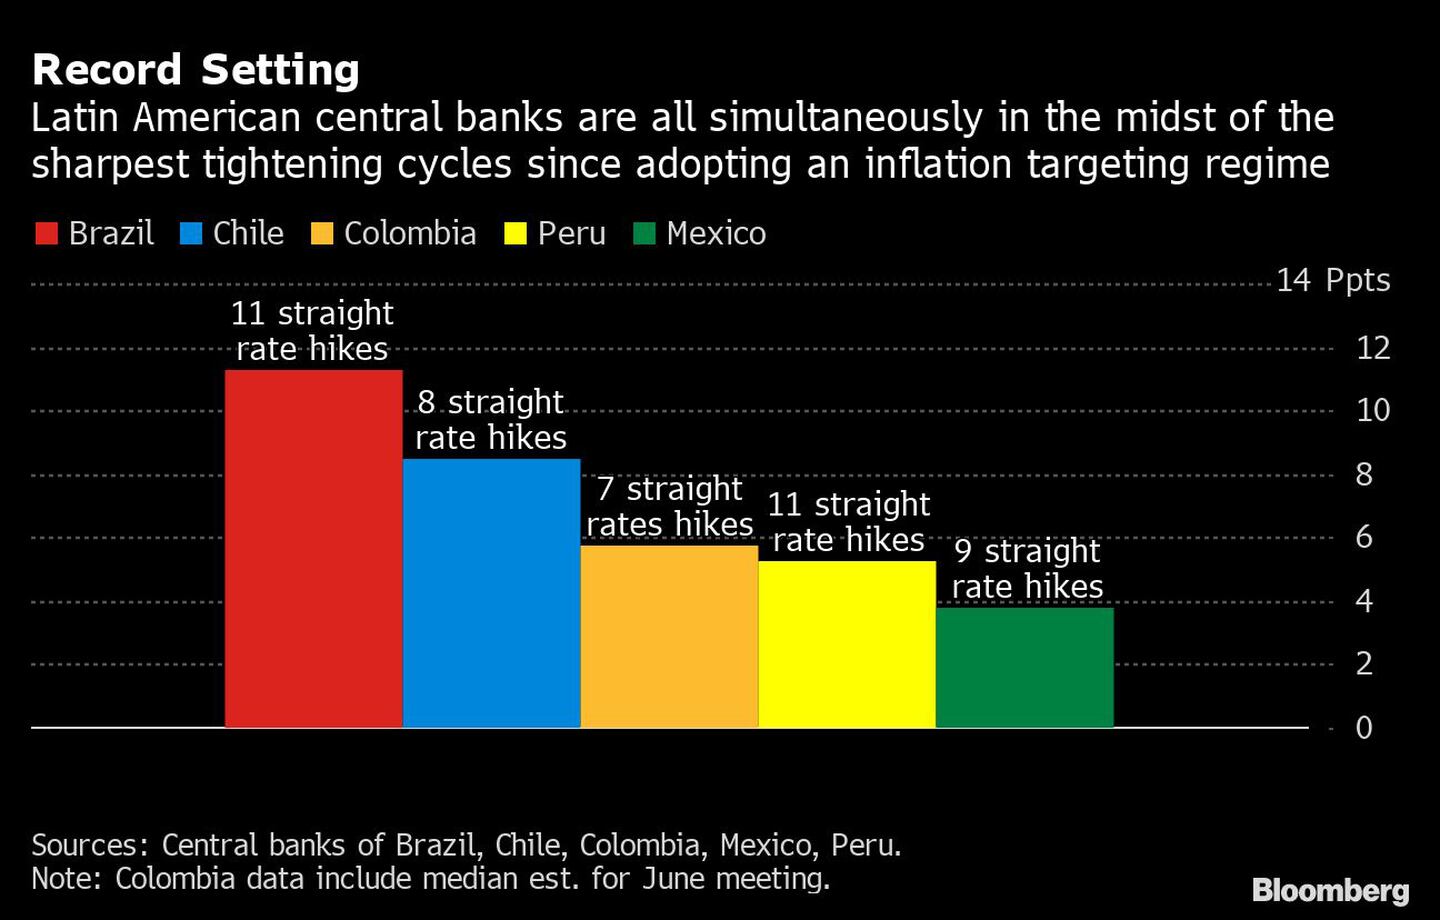 Los bancos centrales de América Latina se encuentran simultáneamente en medio de los ciclos de endurecimiento más pronunciados desde que adoptaron un régimen de objetivos de inflacióndfd